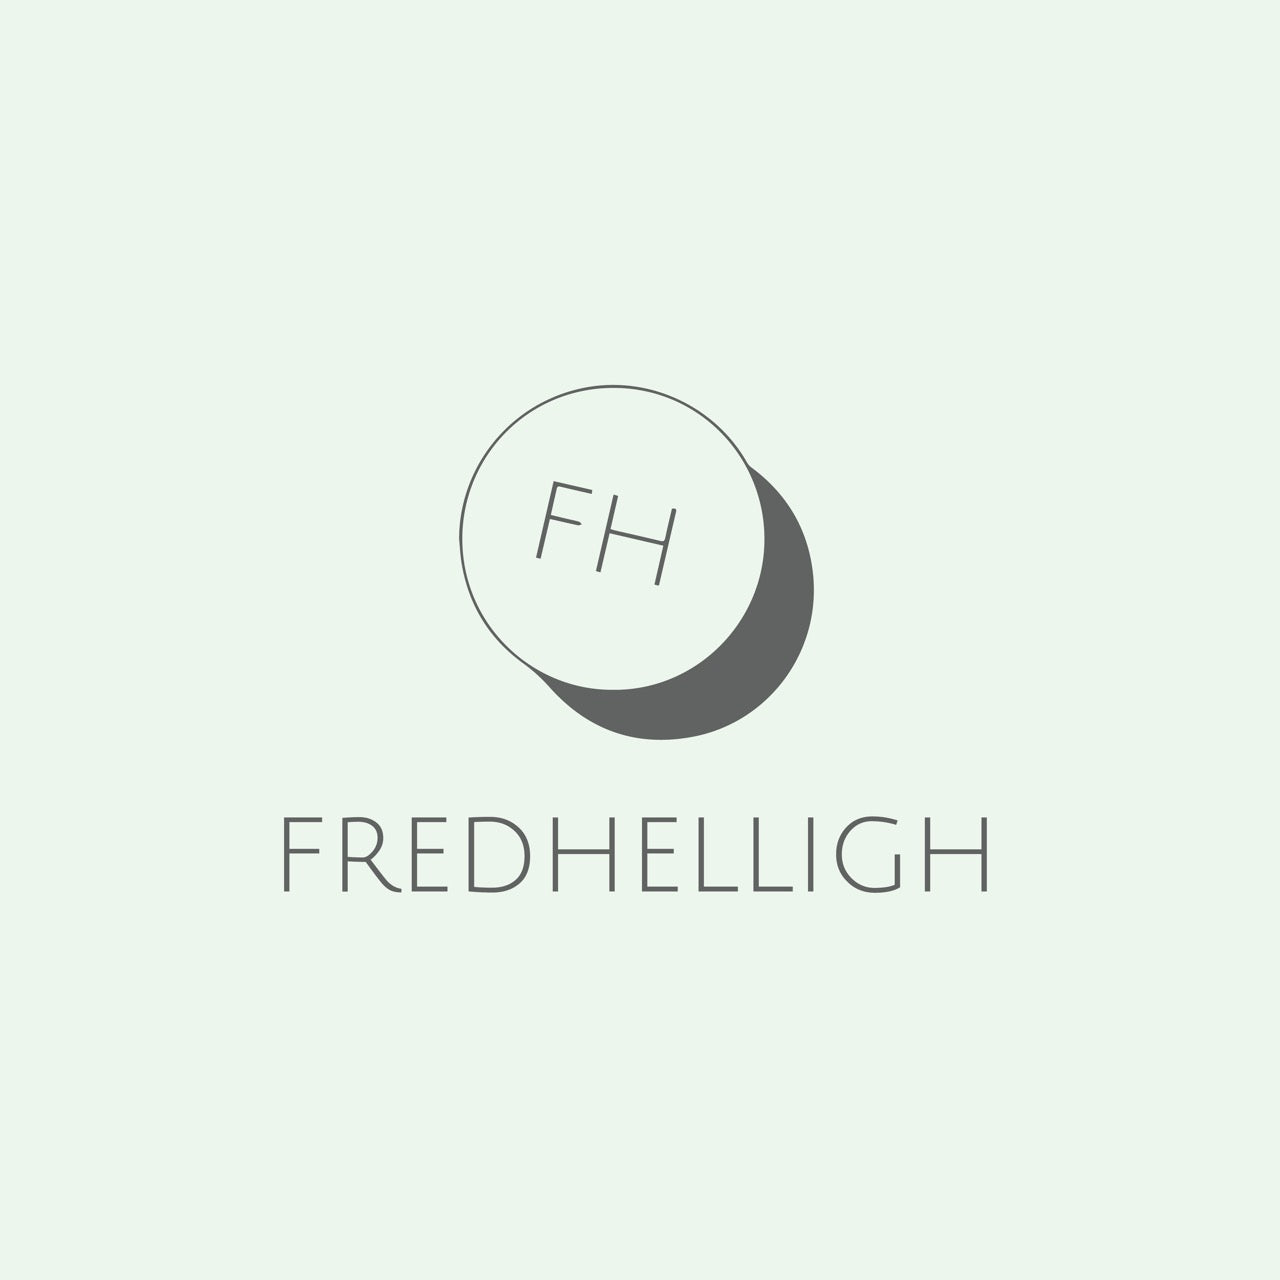 Fredhelligh – fredhelligh.com